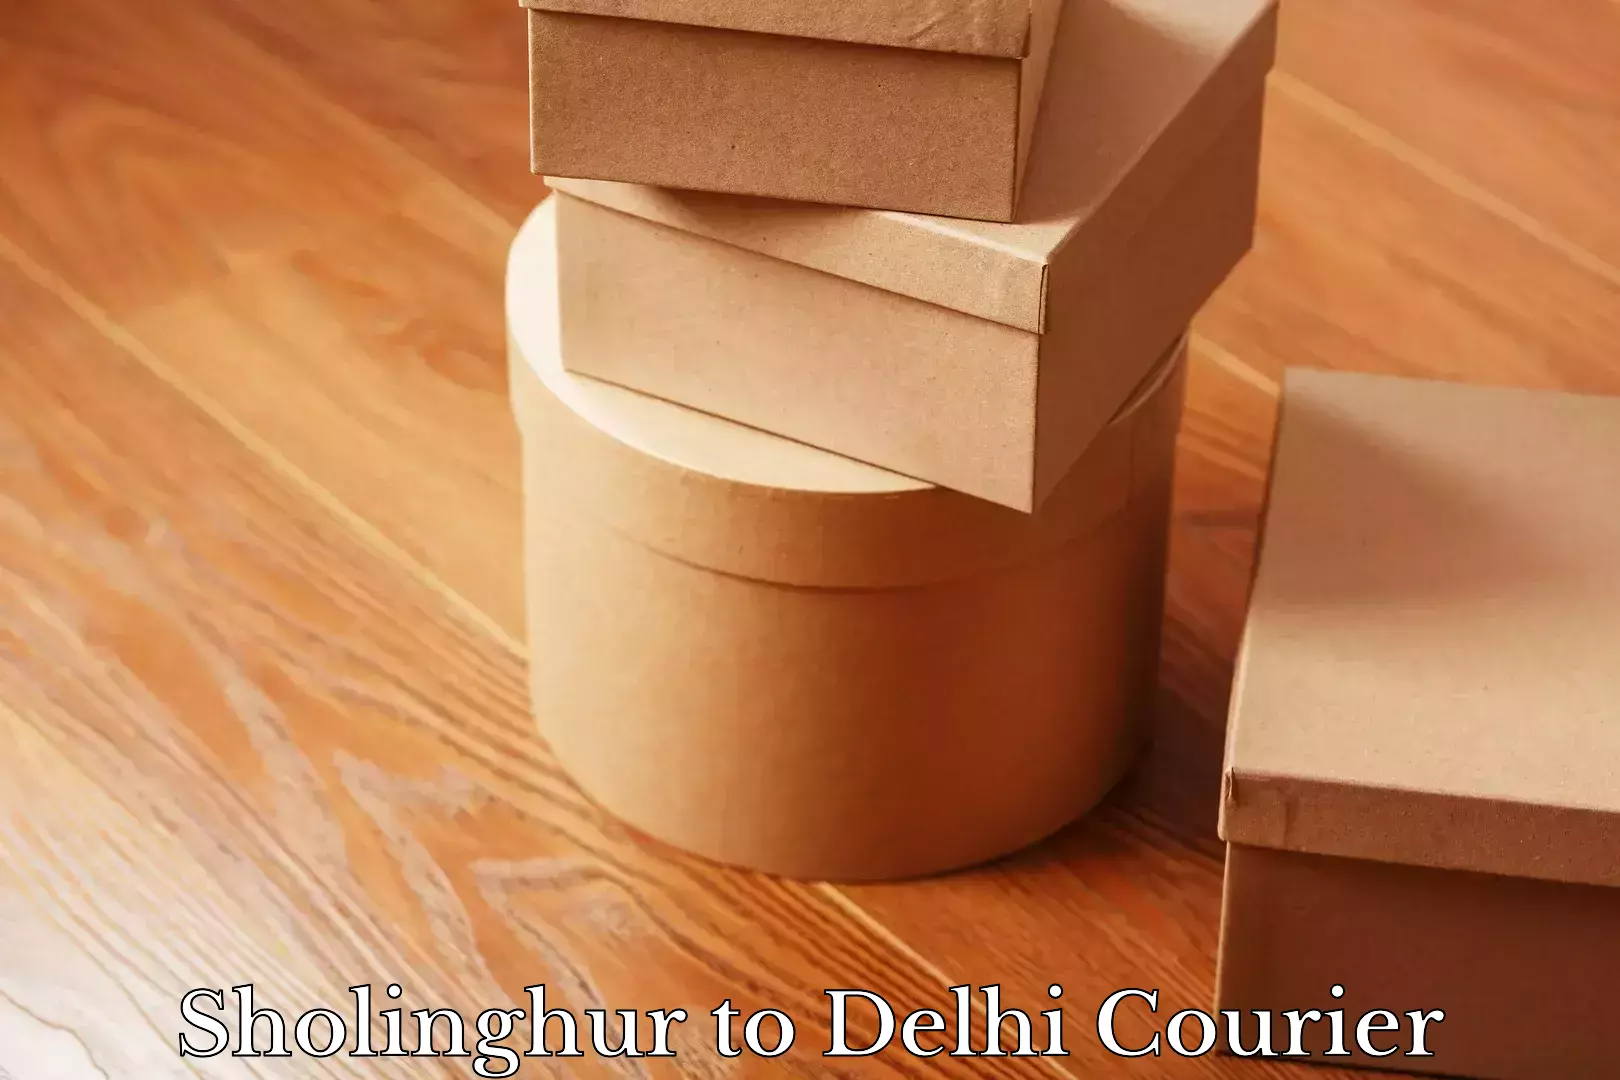 Nationwide delivery network Sholinghur to Delhi